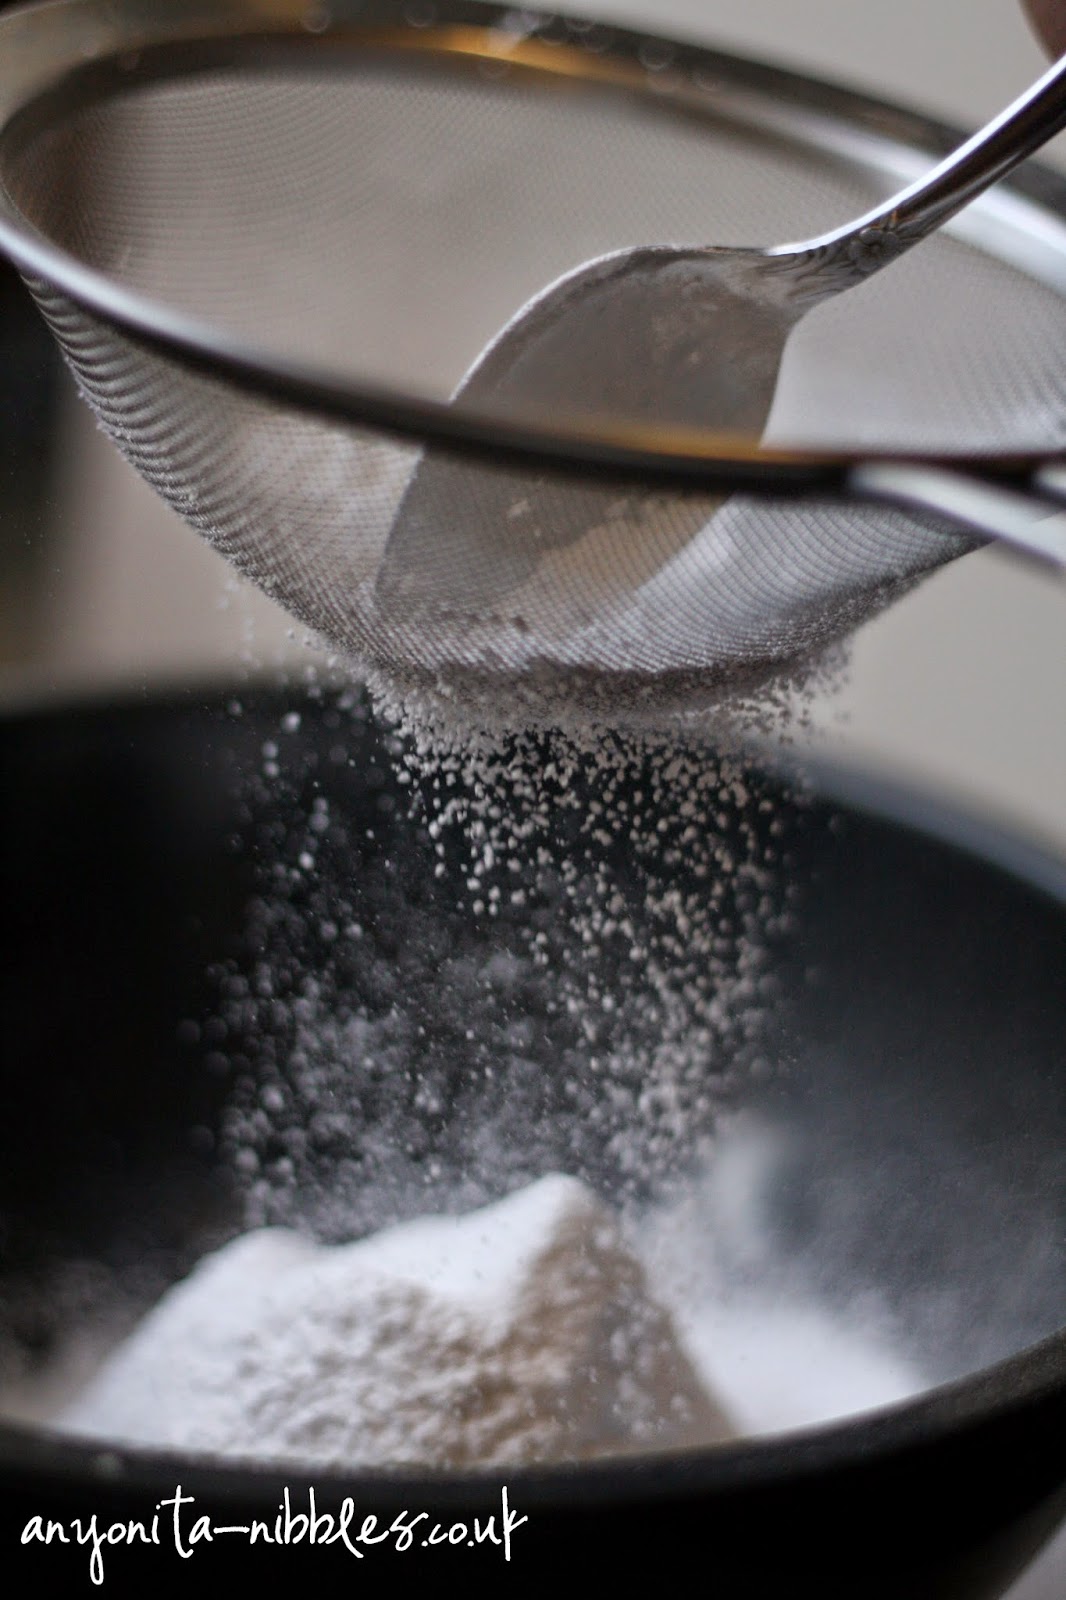 Sifting icing sugar to make macarons  from Anyonita-nibbles.co.uk